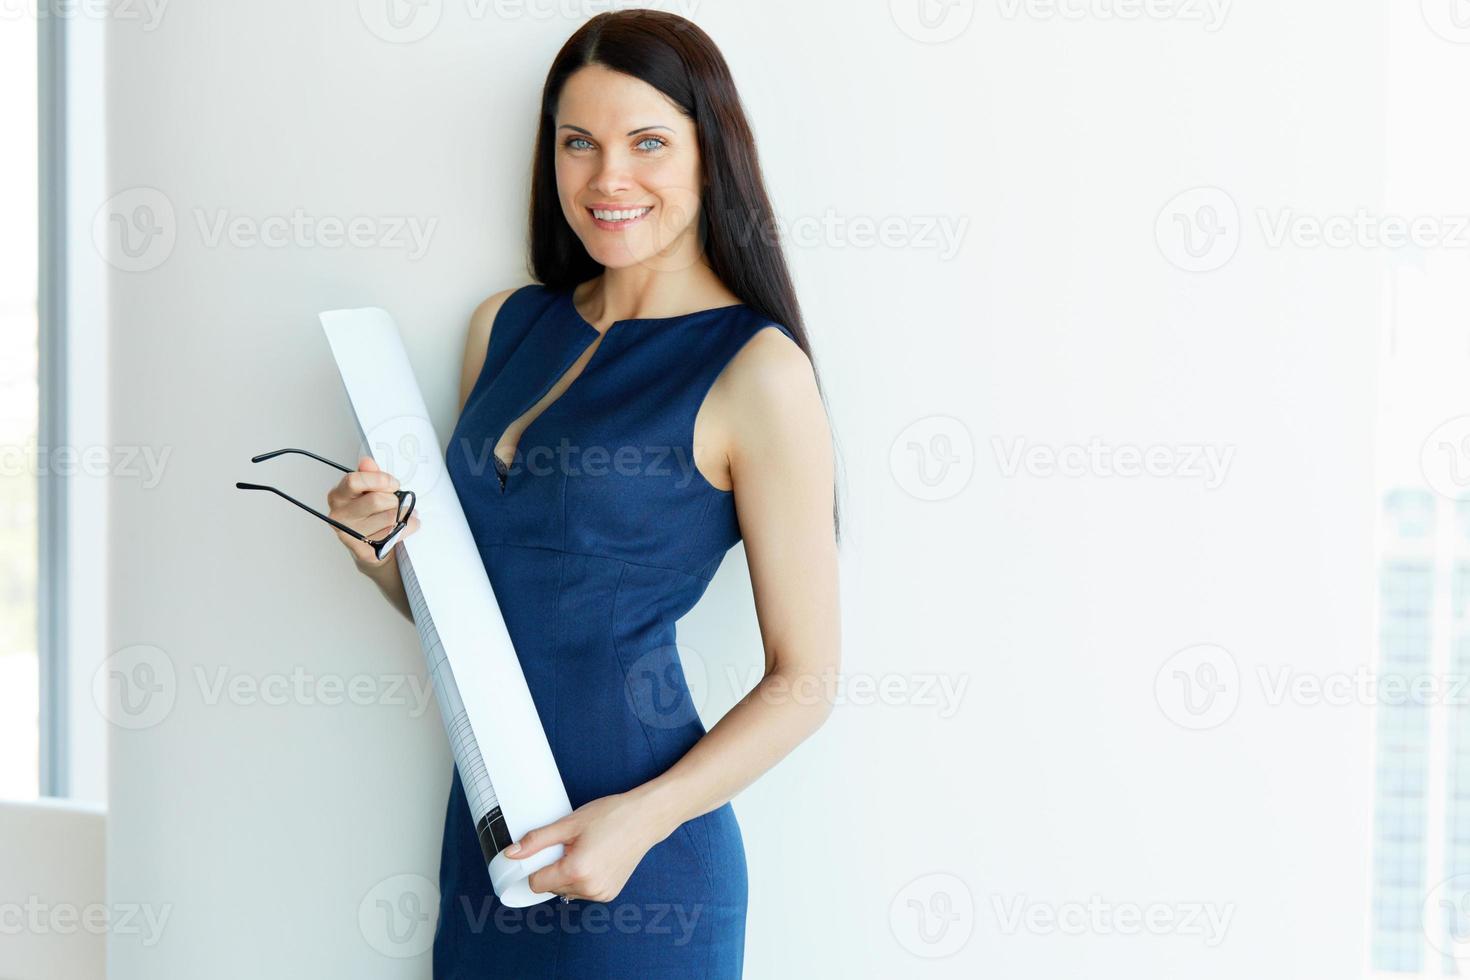 jonge vrouwelijke architect standind in een kantoor. mensen uit het bedrijfsleven foto